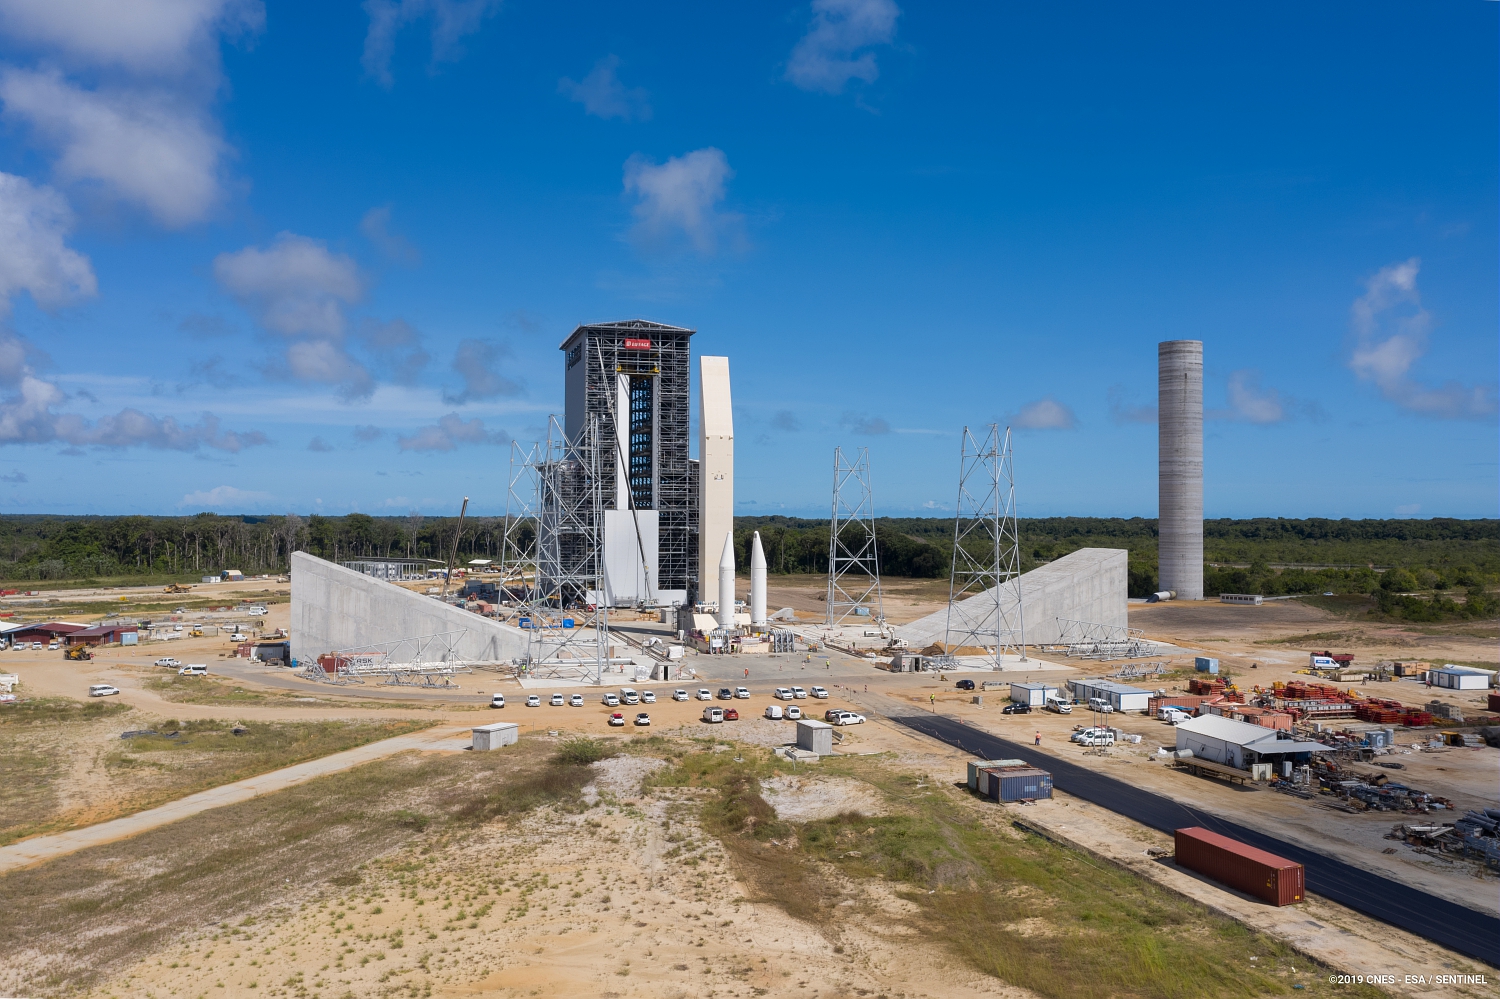 Vue aérienne du chantier ELA 4 au Centre spatial guyanais, futur pas de tir du lanceur Ariane 6.